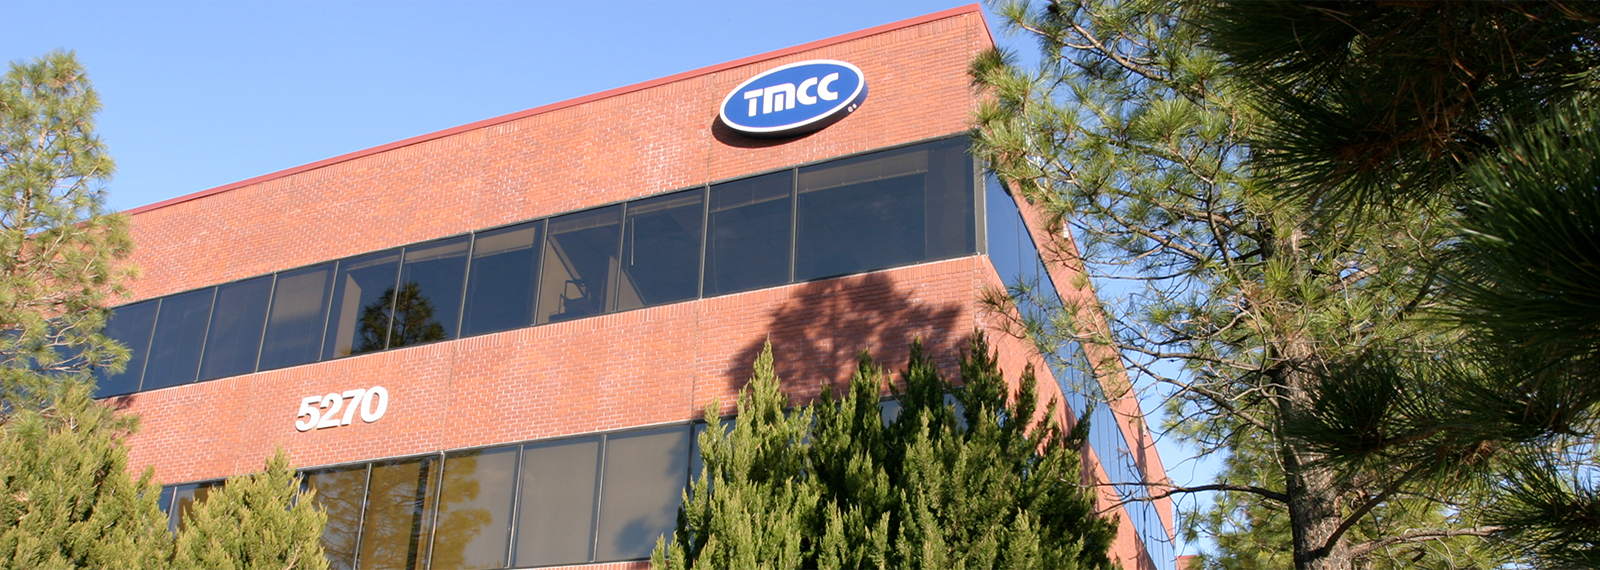 Photo of TMCC building.